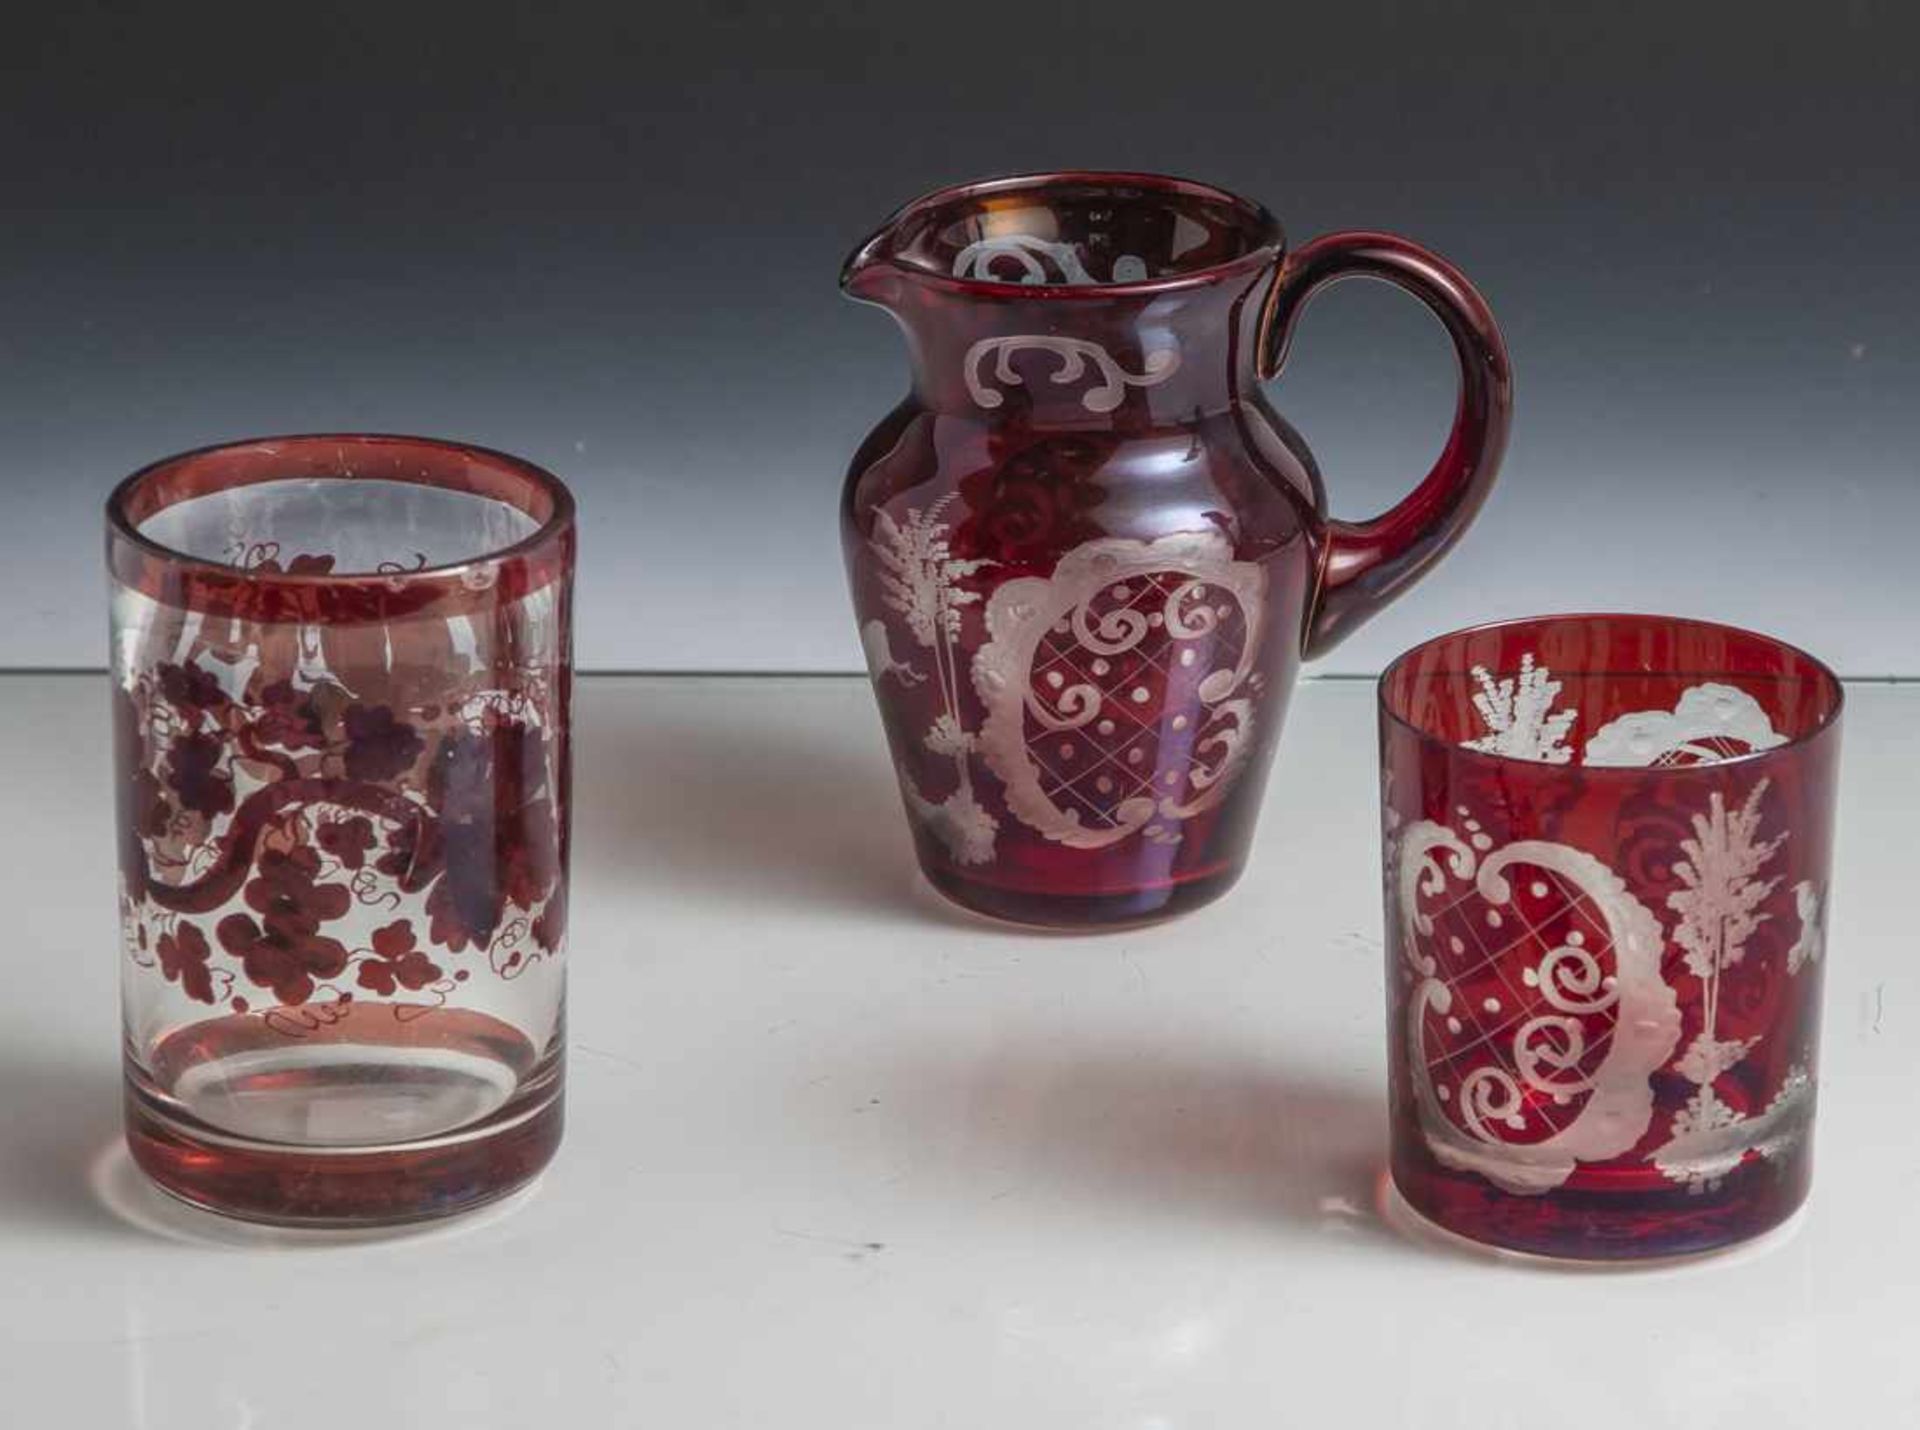 3 Teile Glas, Biedermeier, 2 Gläser und 1 kl. Krug, farbloses, mundgeblasenes Glas, rot lasiert, 2 x